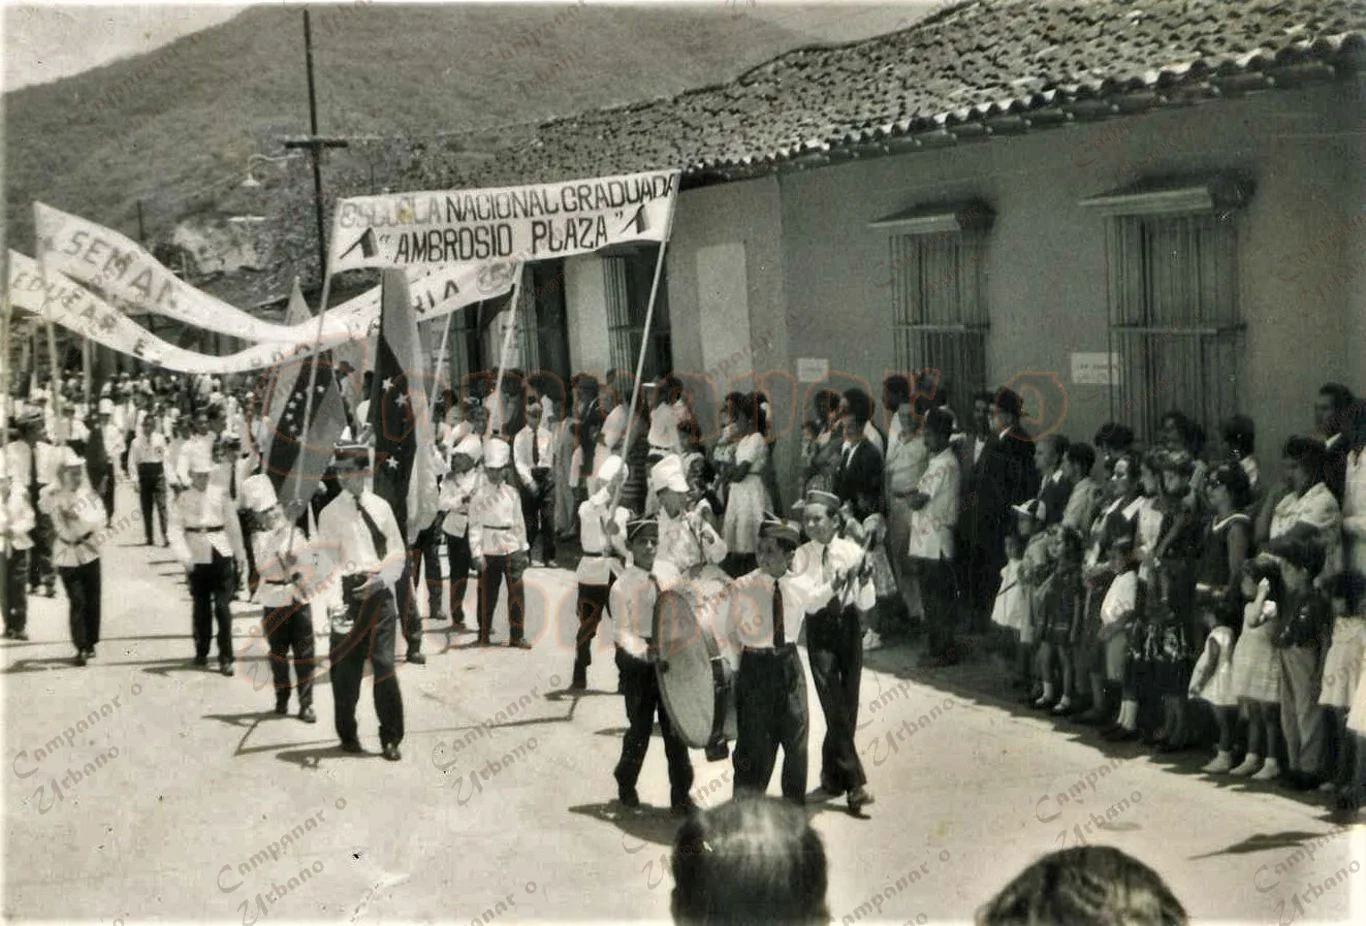 Desfile de los estudiantes de la Escuela Federal Graduada "Ambrosio Plaza" (solo para varones). Plaza Bolívar de Guarenas, año 1955